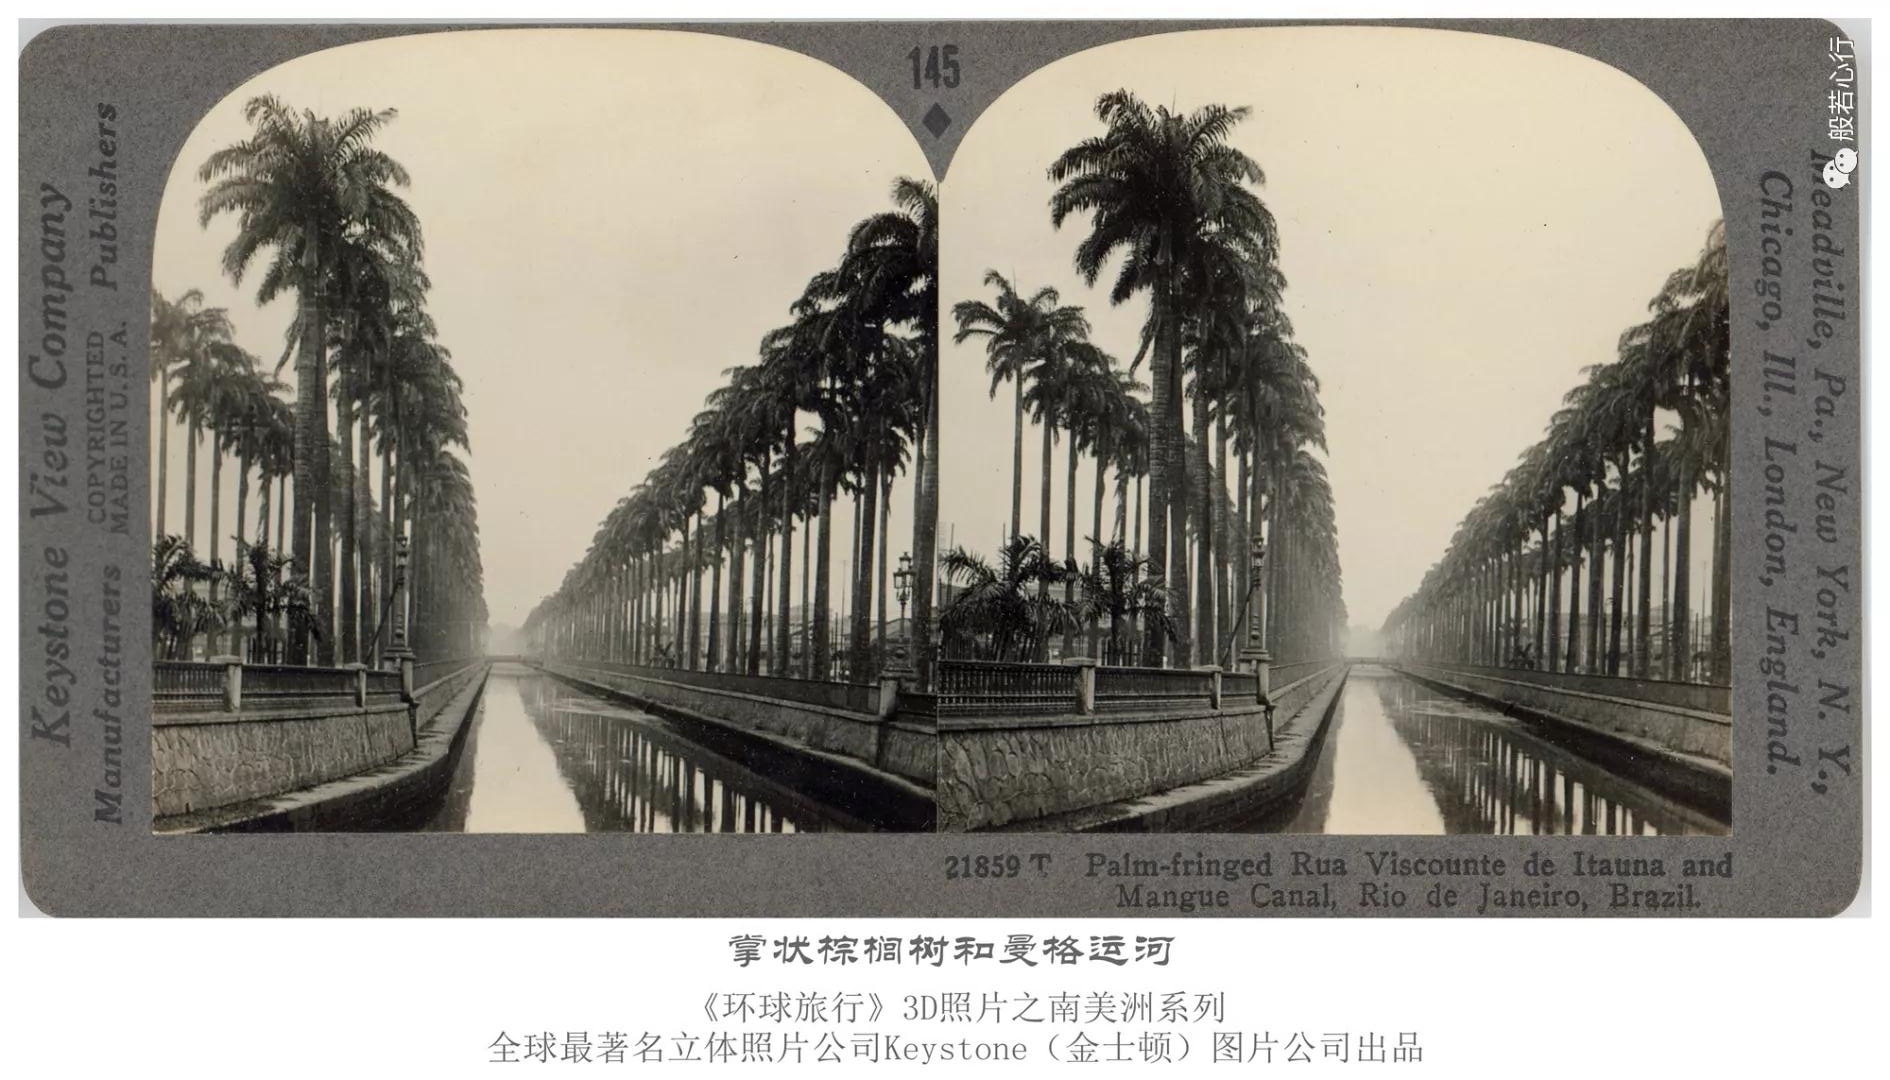 掌状棕榈树和曼格运河-1936年3D版《环球旅行》立体照片